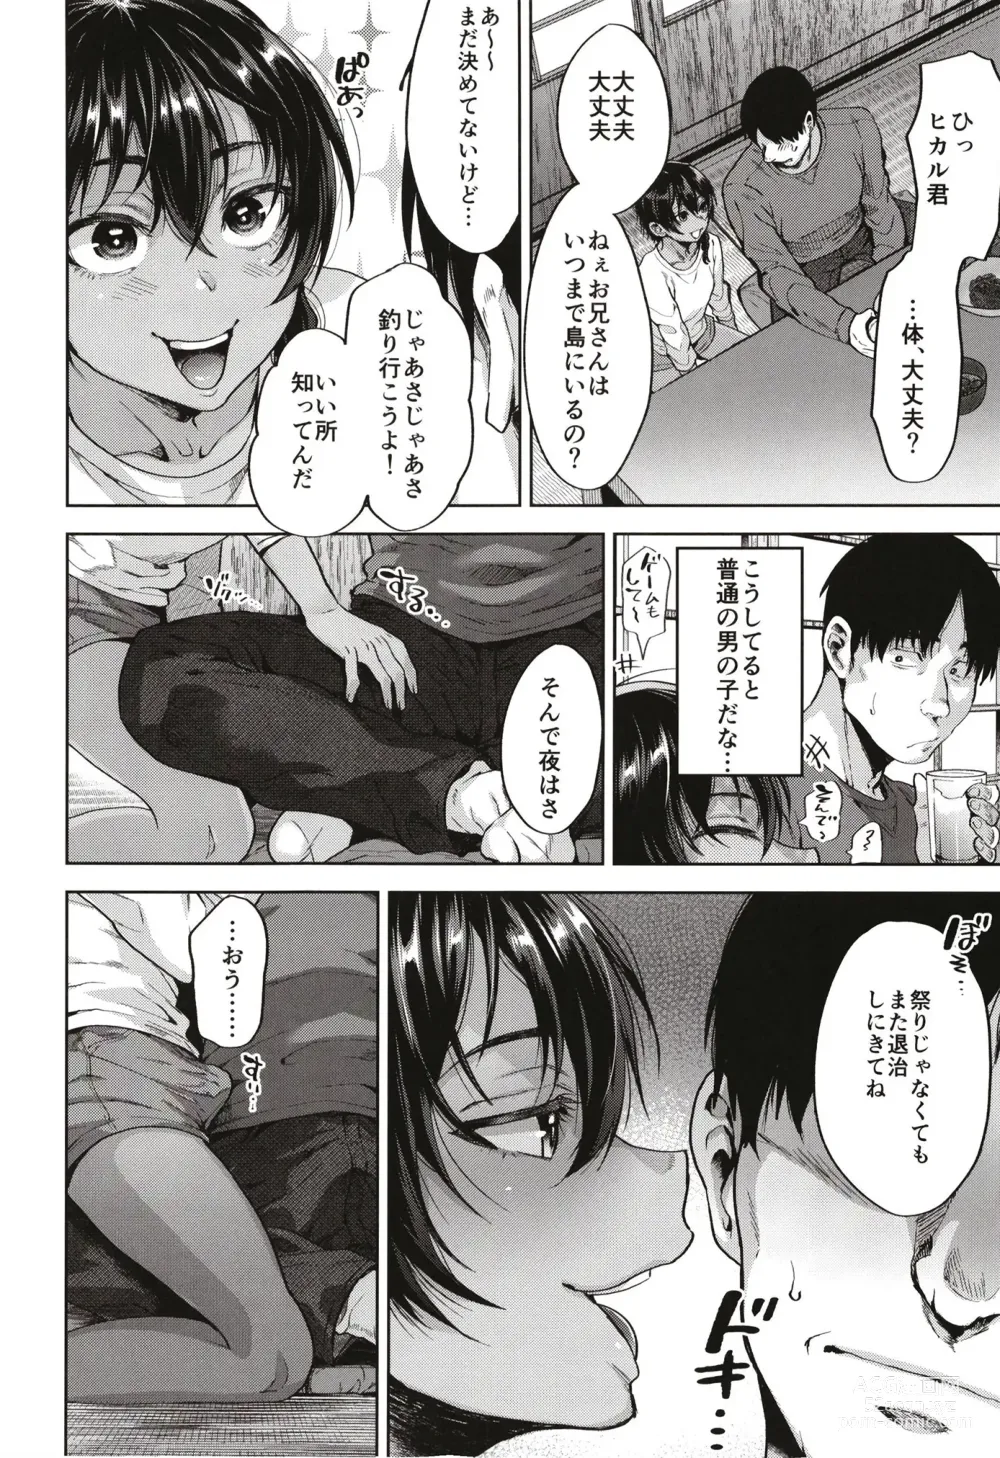 Page 36 of doujinshi Onigo matsurinoyoru